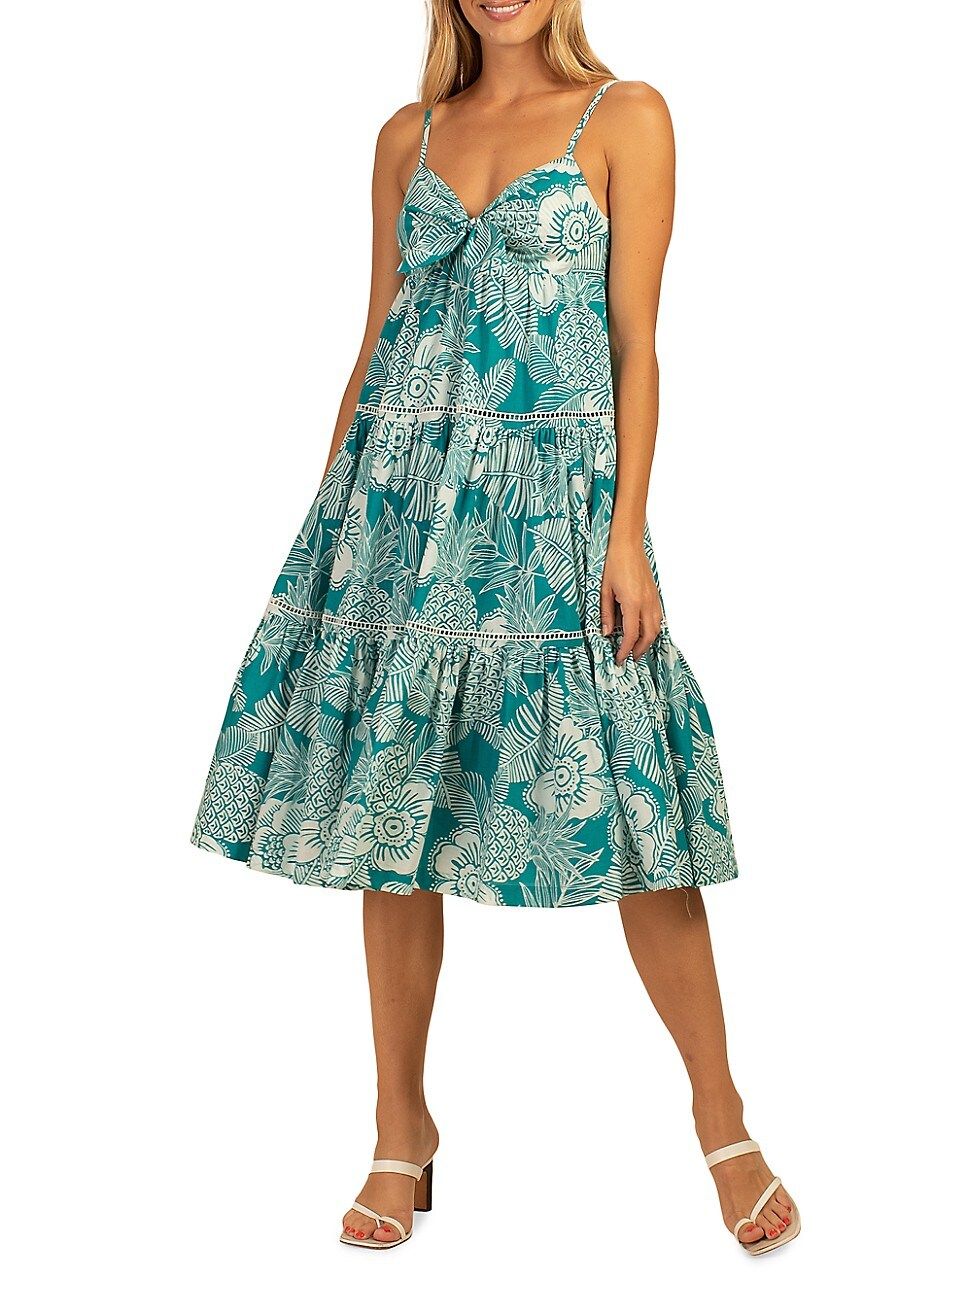 Women's Glorious Floral Cotton Dress - Tile Blue Whitewash - Size Medium - Tile Blue Whitewash - Siz | Saks Fifth Avenue